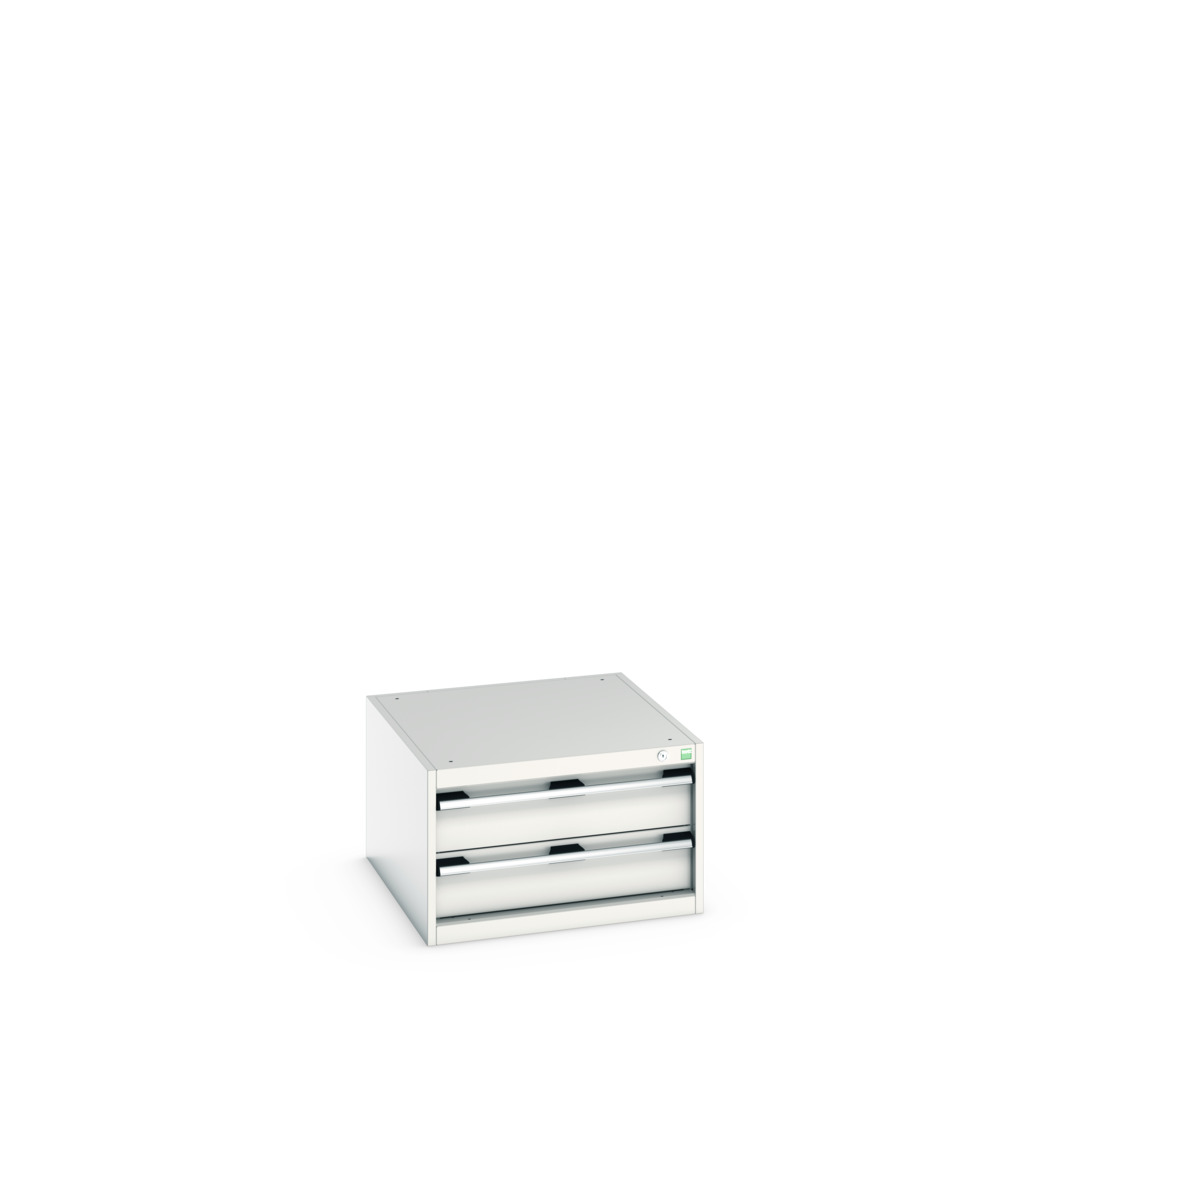 40027108.16V - cubio drawer cabinet